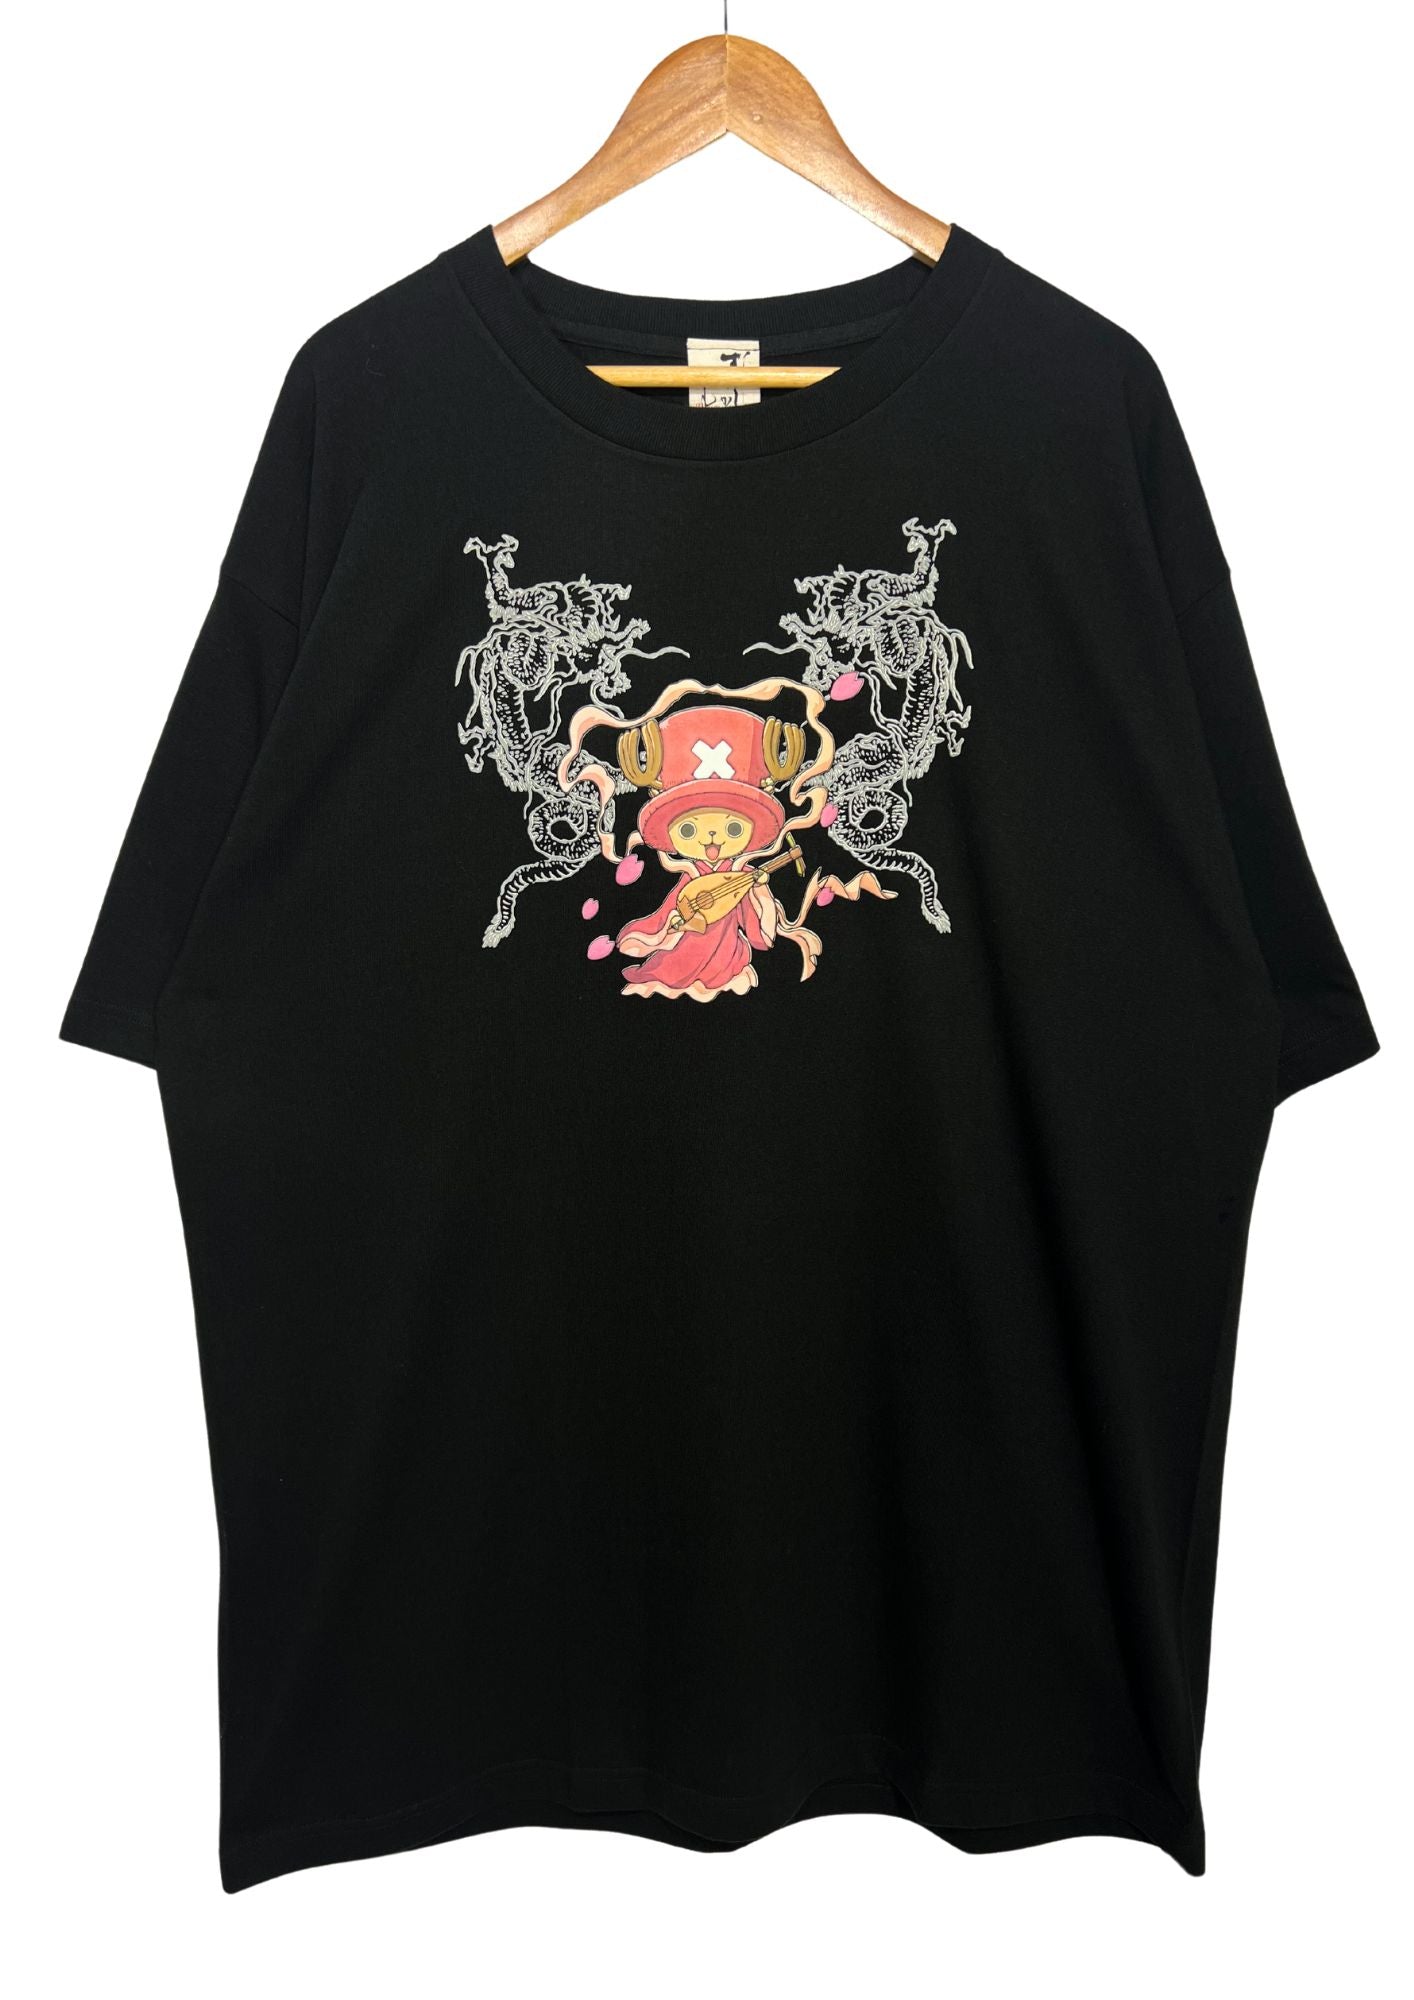 2010 One Piece x Mukashi Mukashi Chopper T-shirt